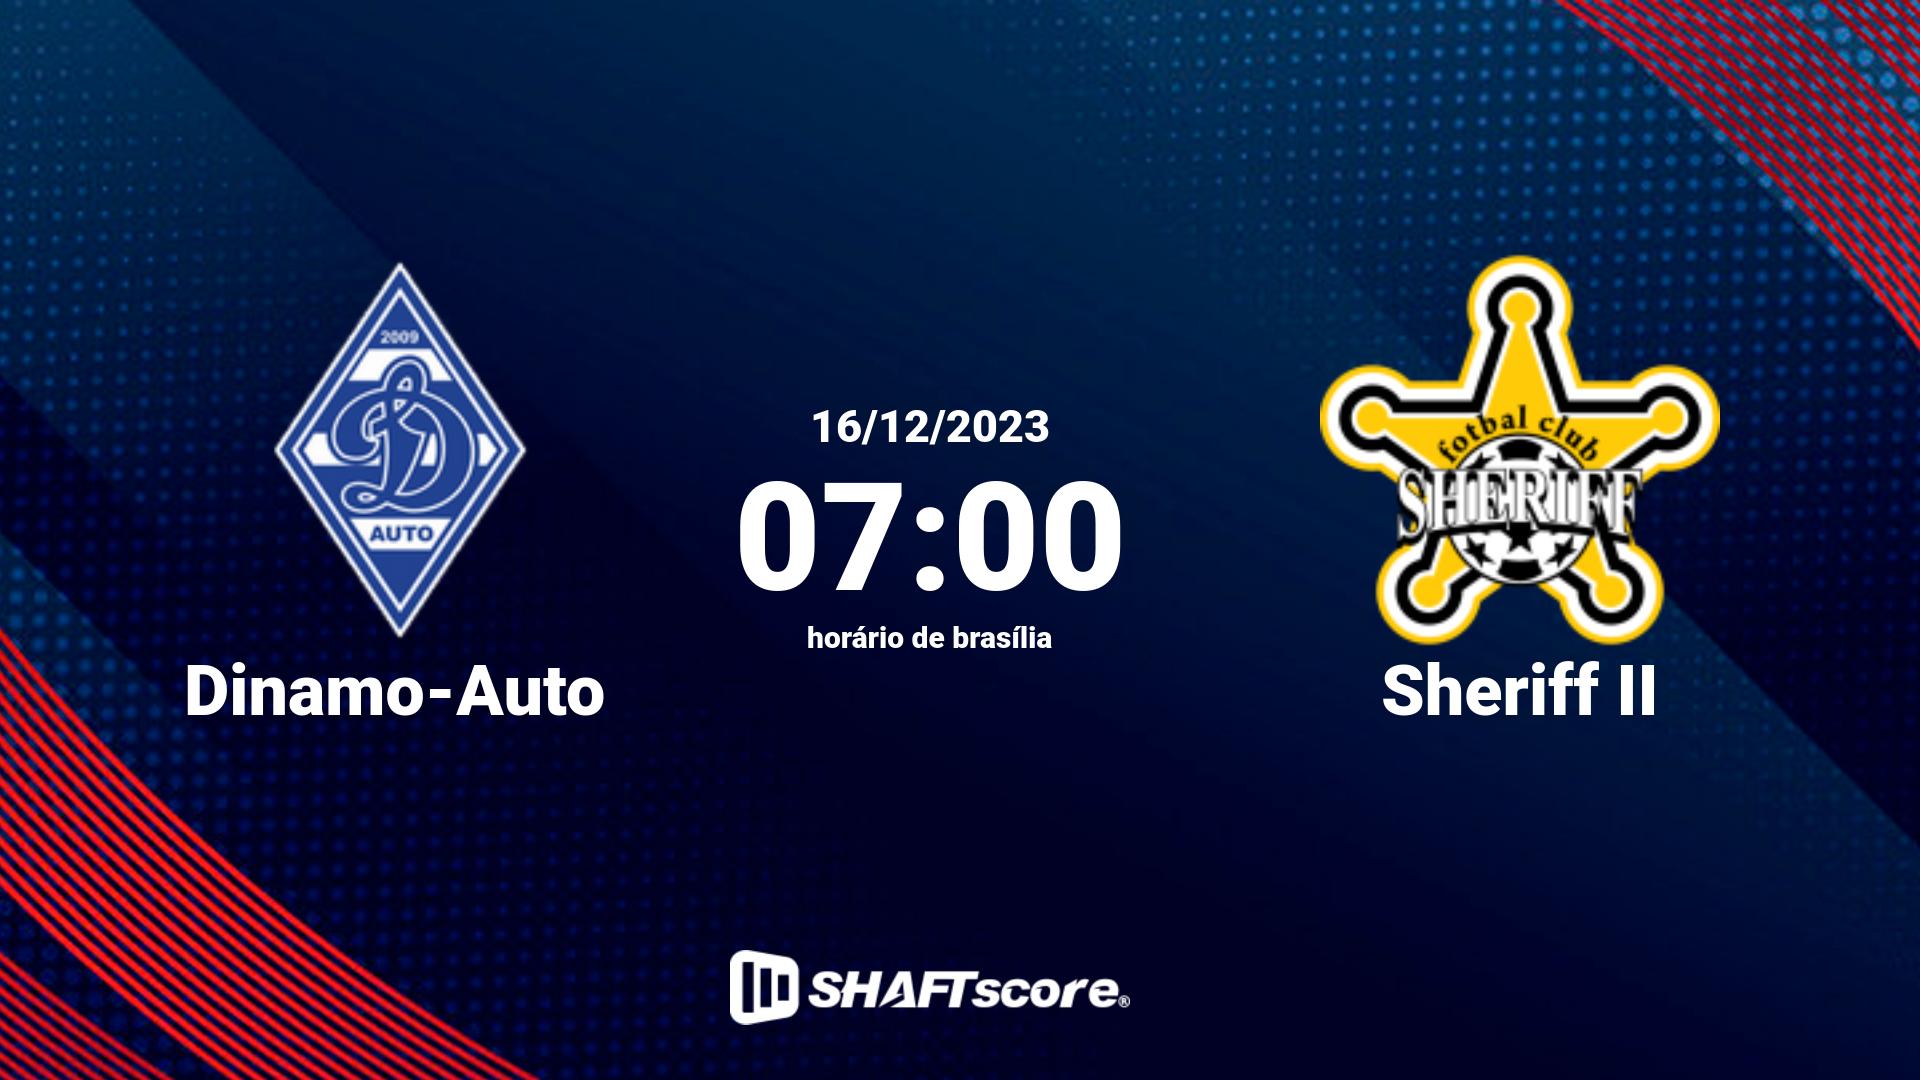 Estatísticas do jogo Dinamo-Auto vs Sheriff II 16.12 07:00